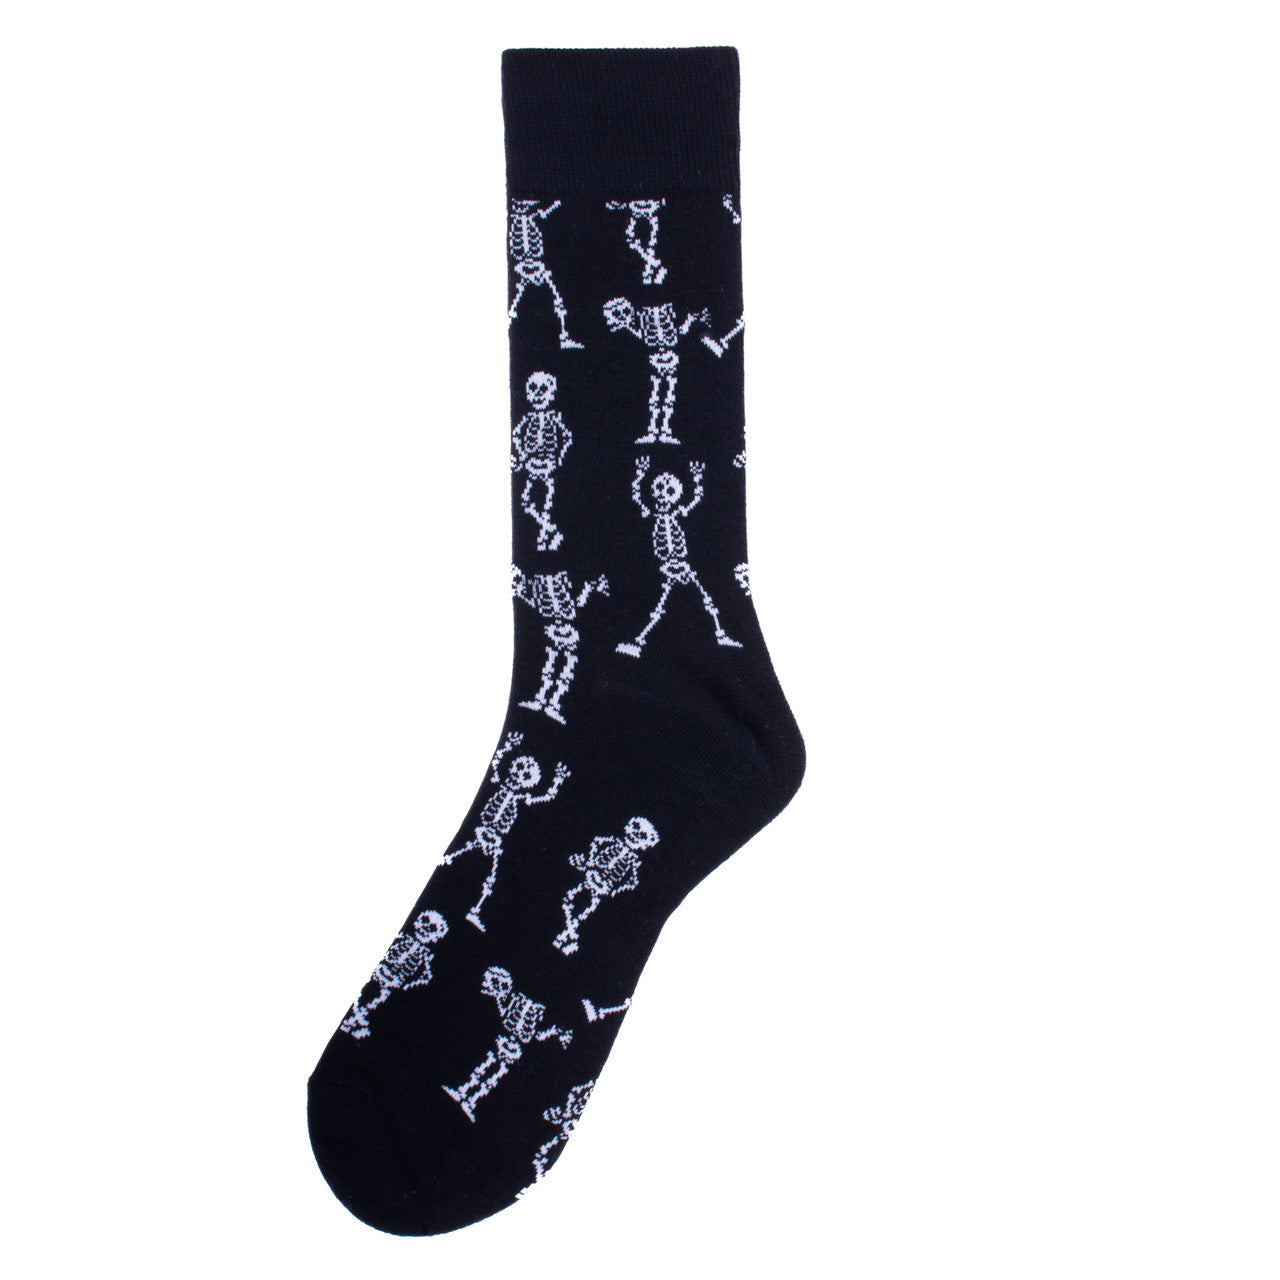 Men's Halloween Crew Socks - Skeleton Socks